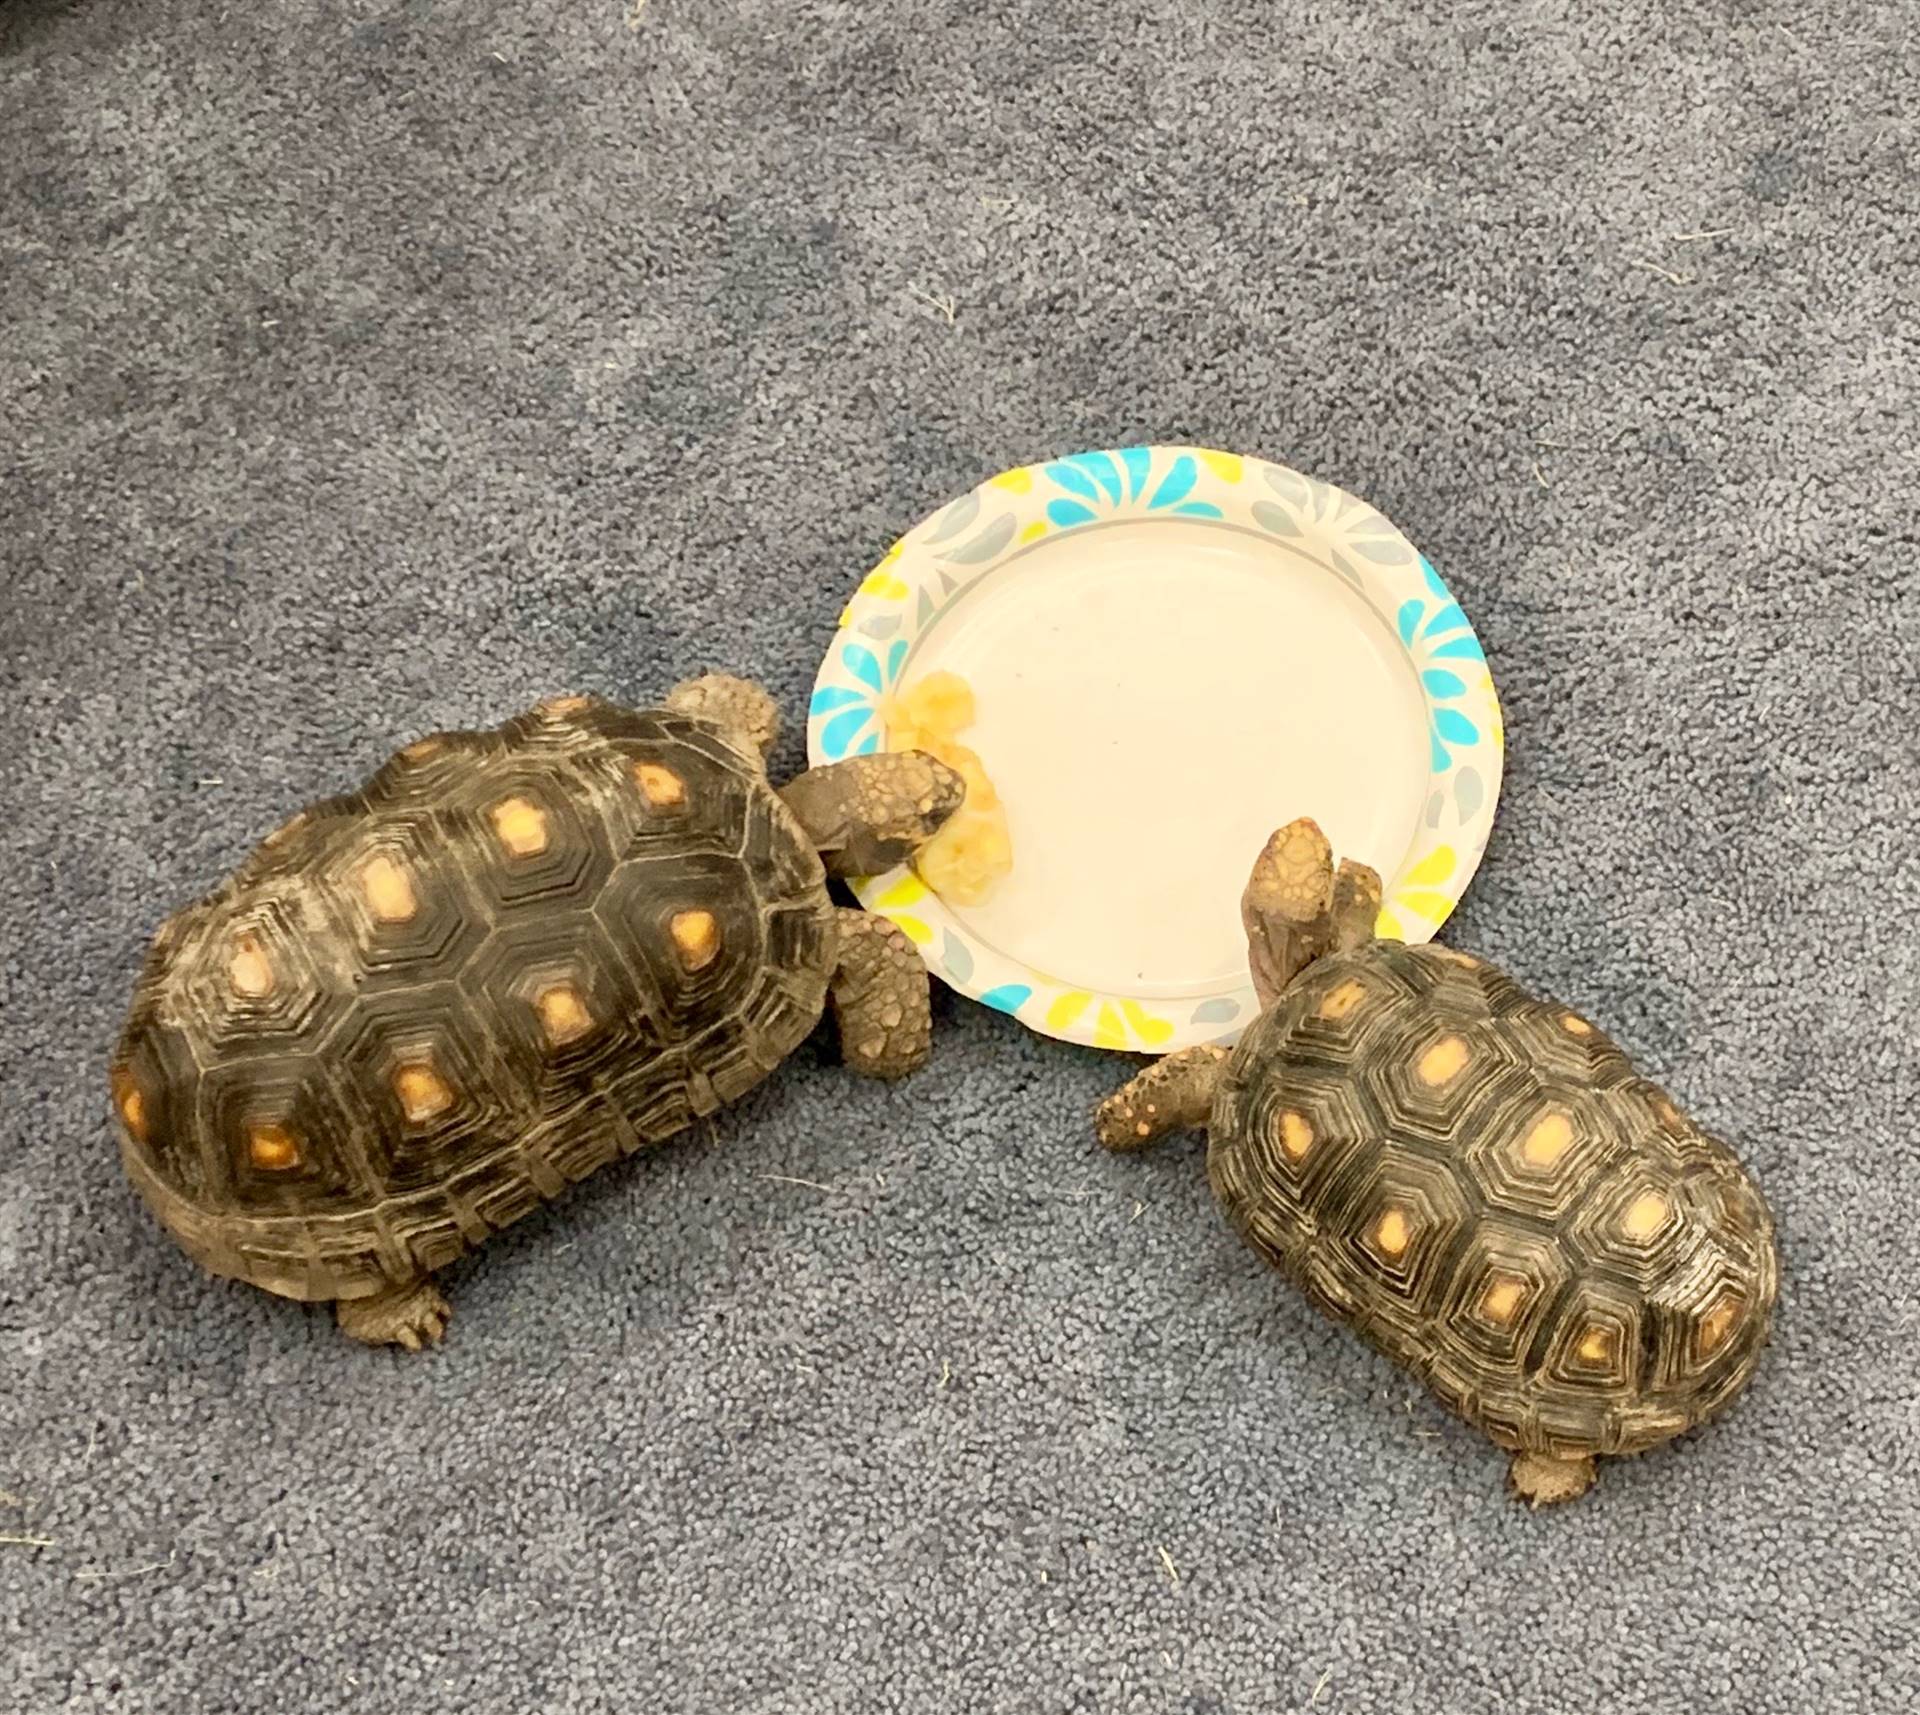 2 tortoises eating a banana